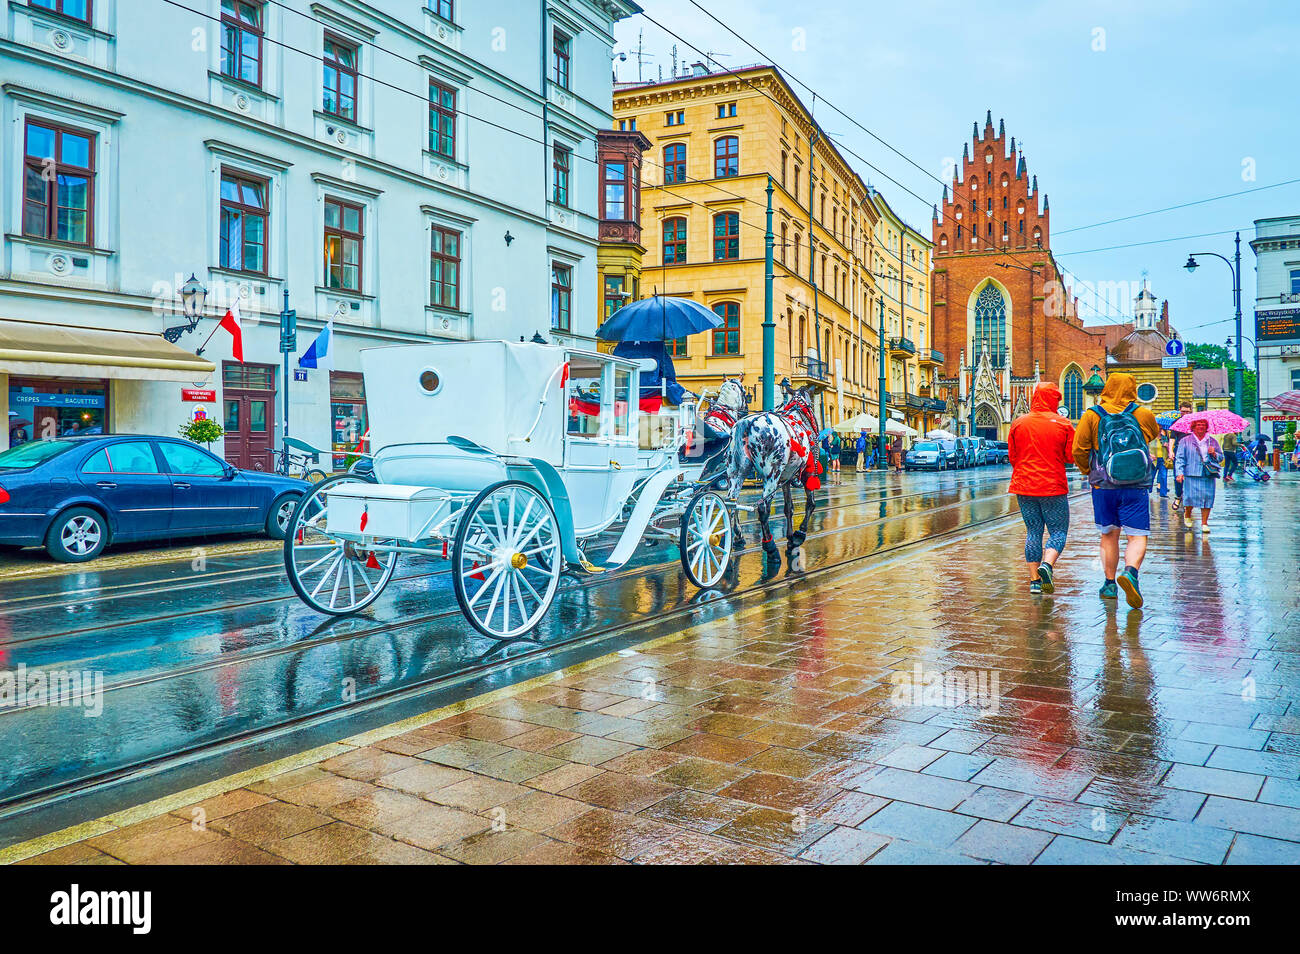 Cracovia in Polonia - Giugno 13, 2018: La scena urbana nella giornata di pioggia con il maneggio carrello lungo tutte le Saint Square, il 13 giugno a Cracovia Foto Stock